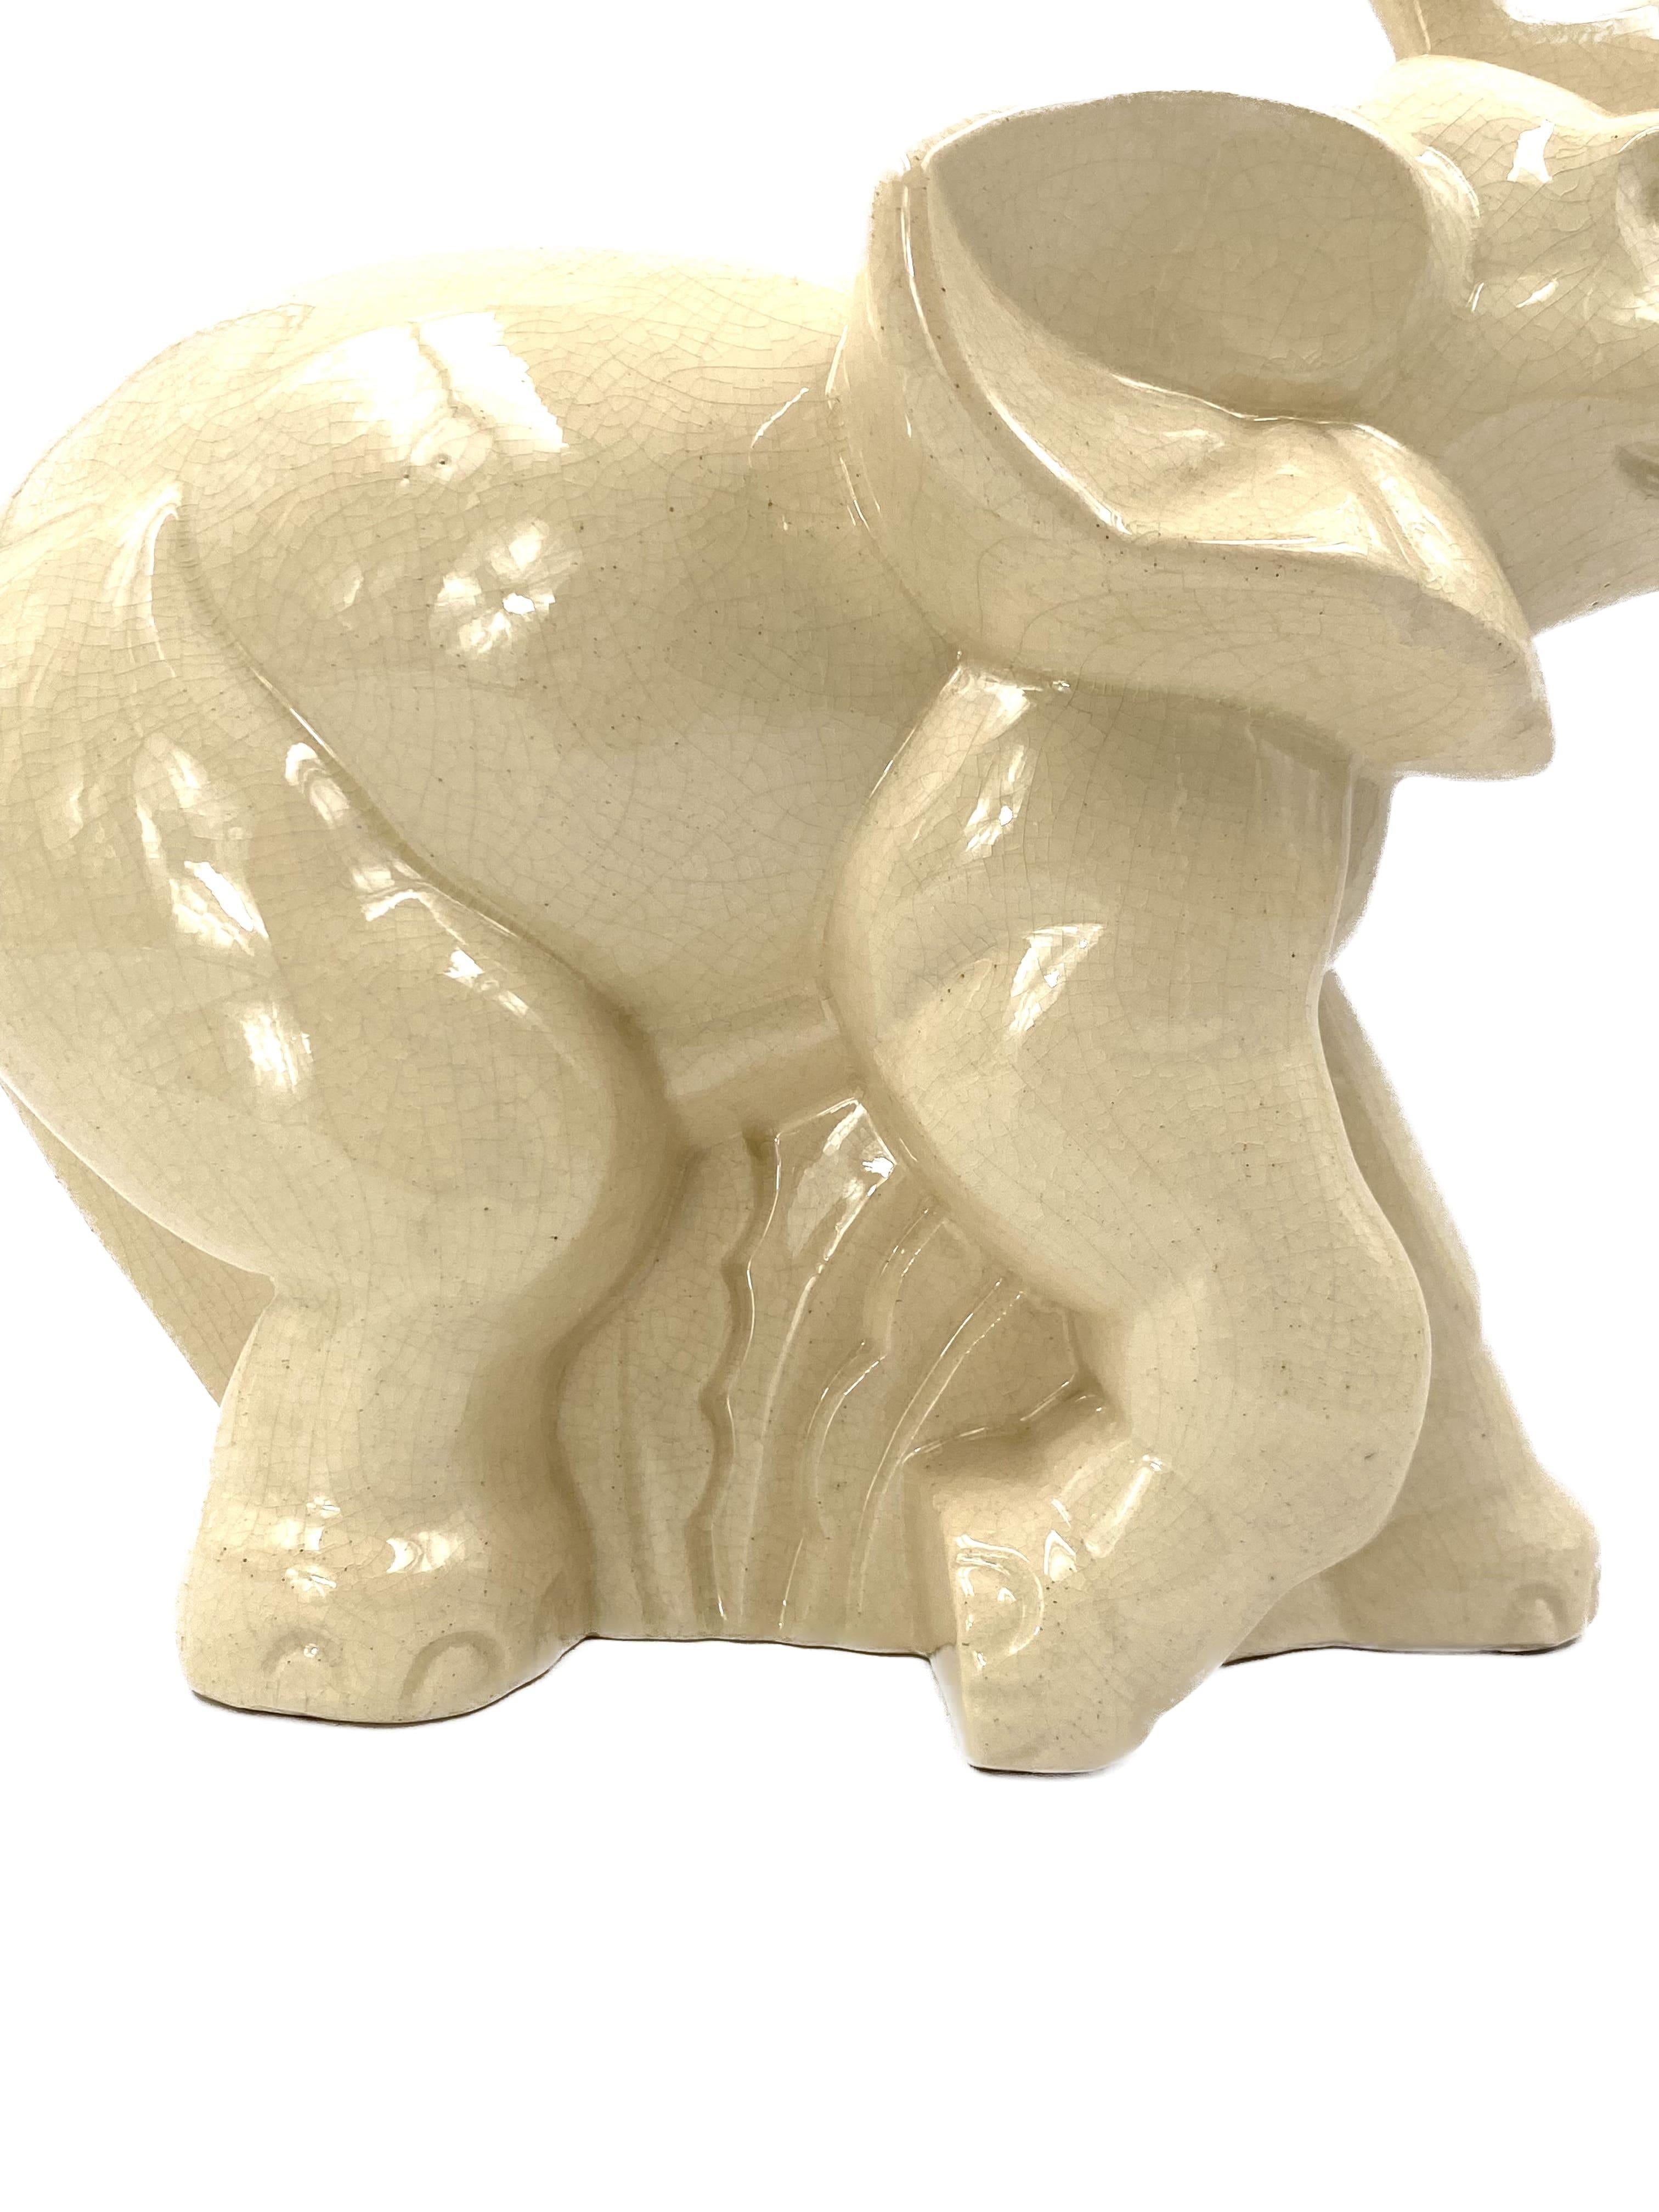 Elephant Craquelé Glazed Earthenware Art Deco Sculpture, Fontinelle Belgium 1940 For Sale 1